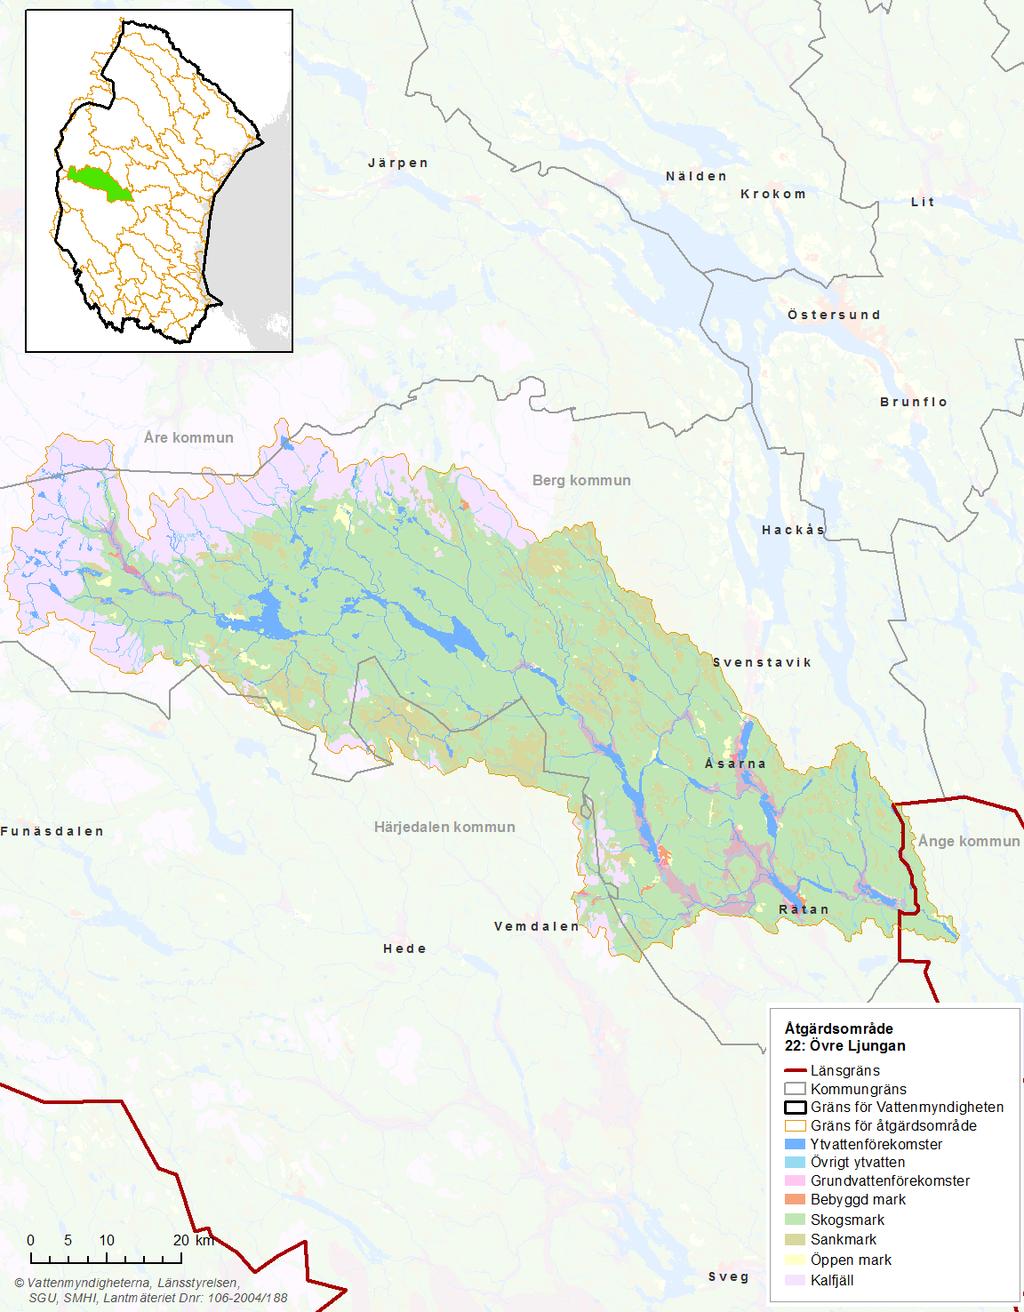 Bild 1: Kartan visar Övre Ljungans markanvändning